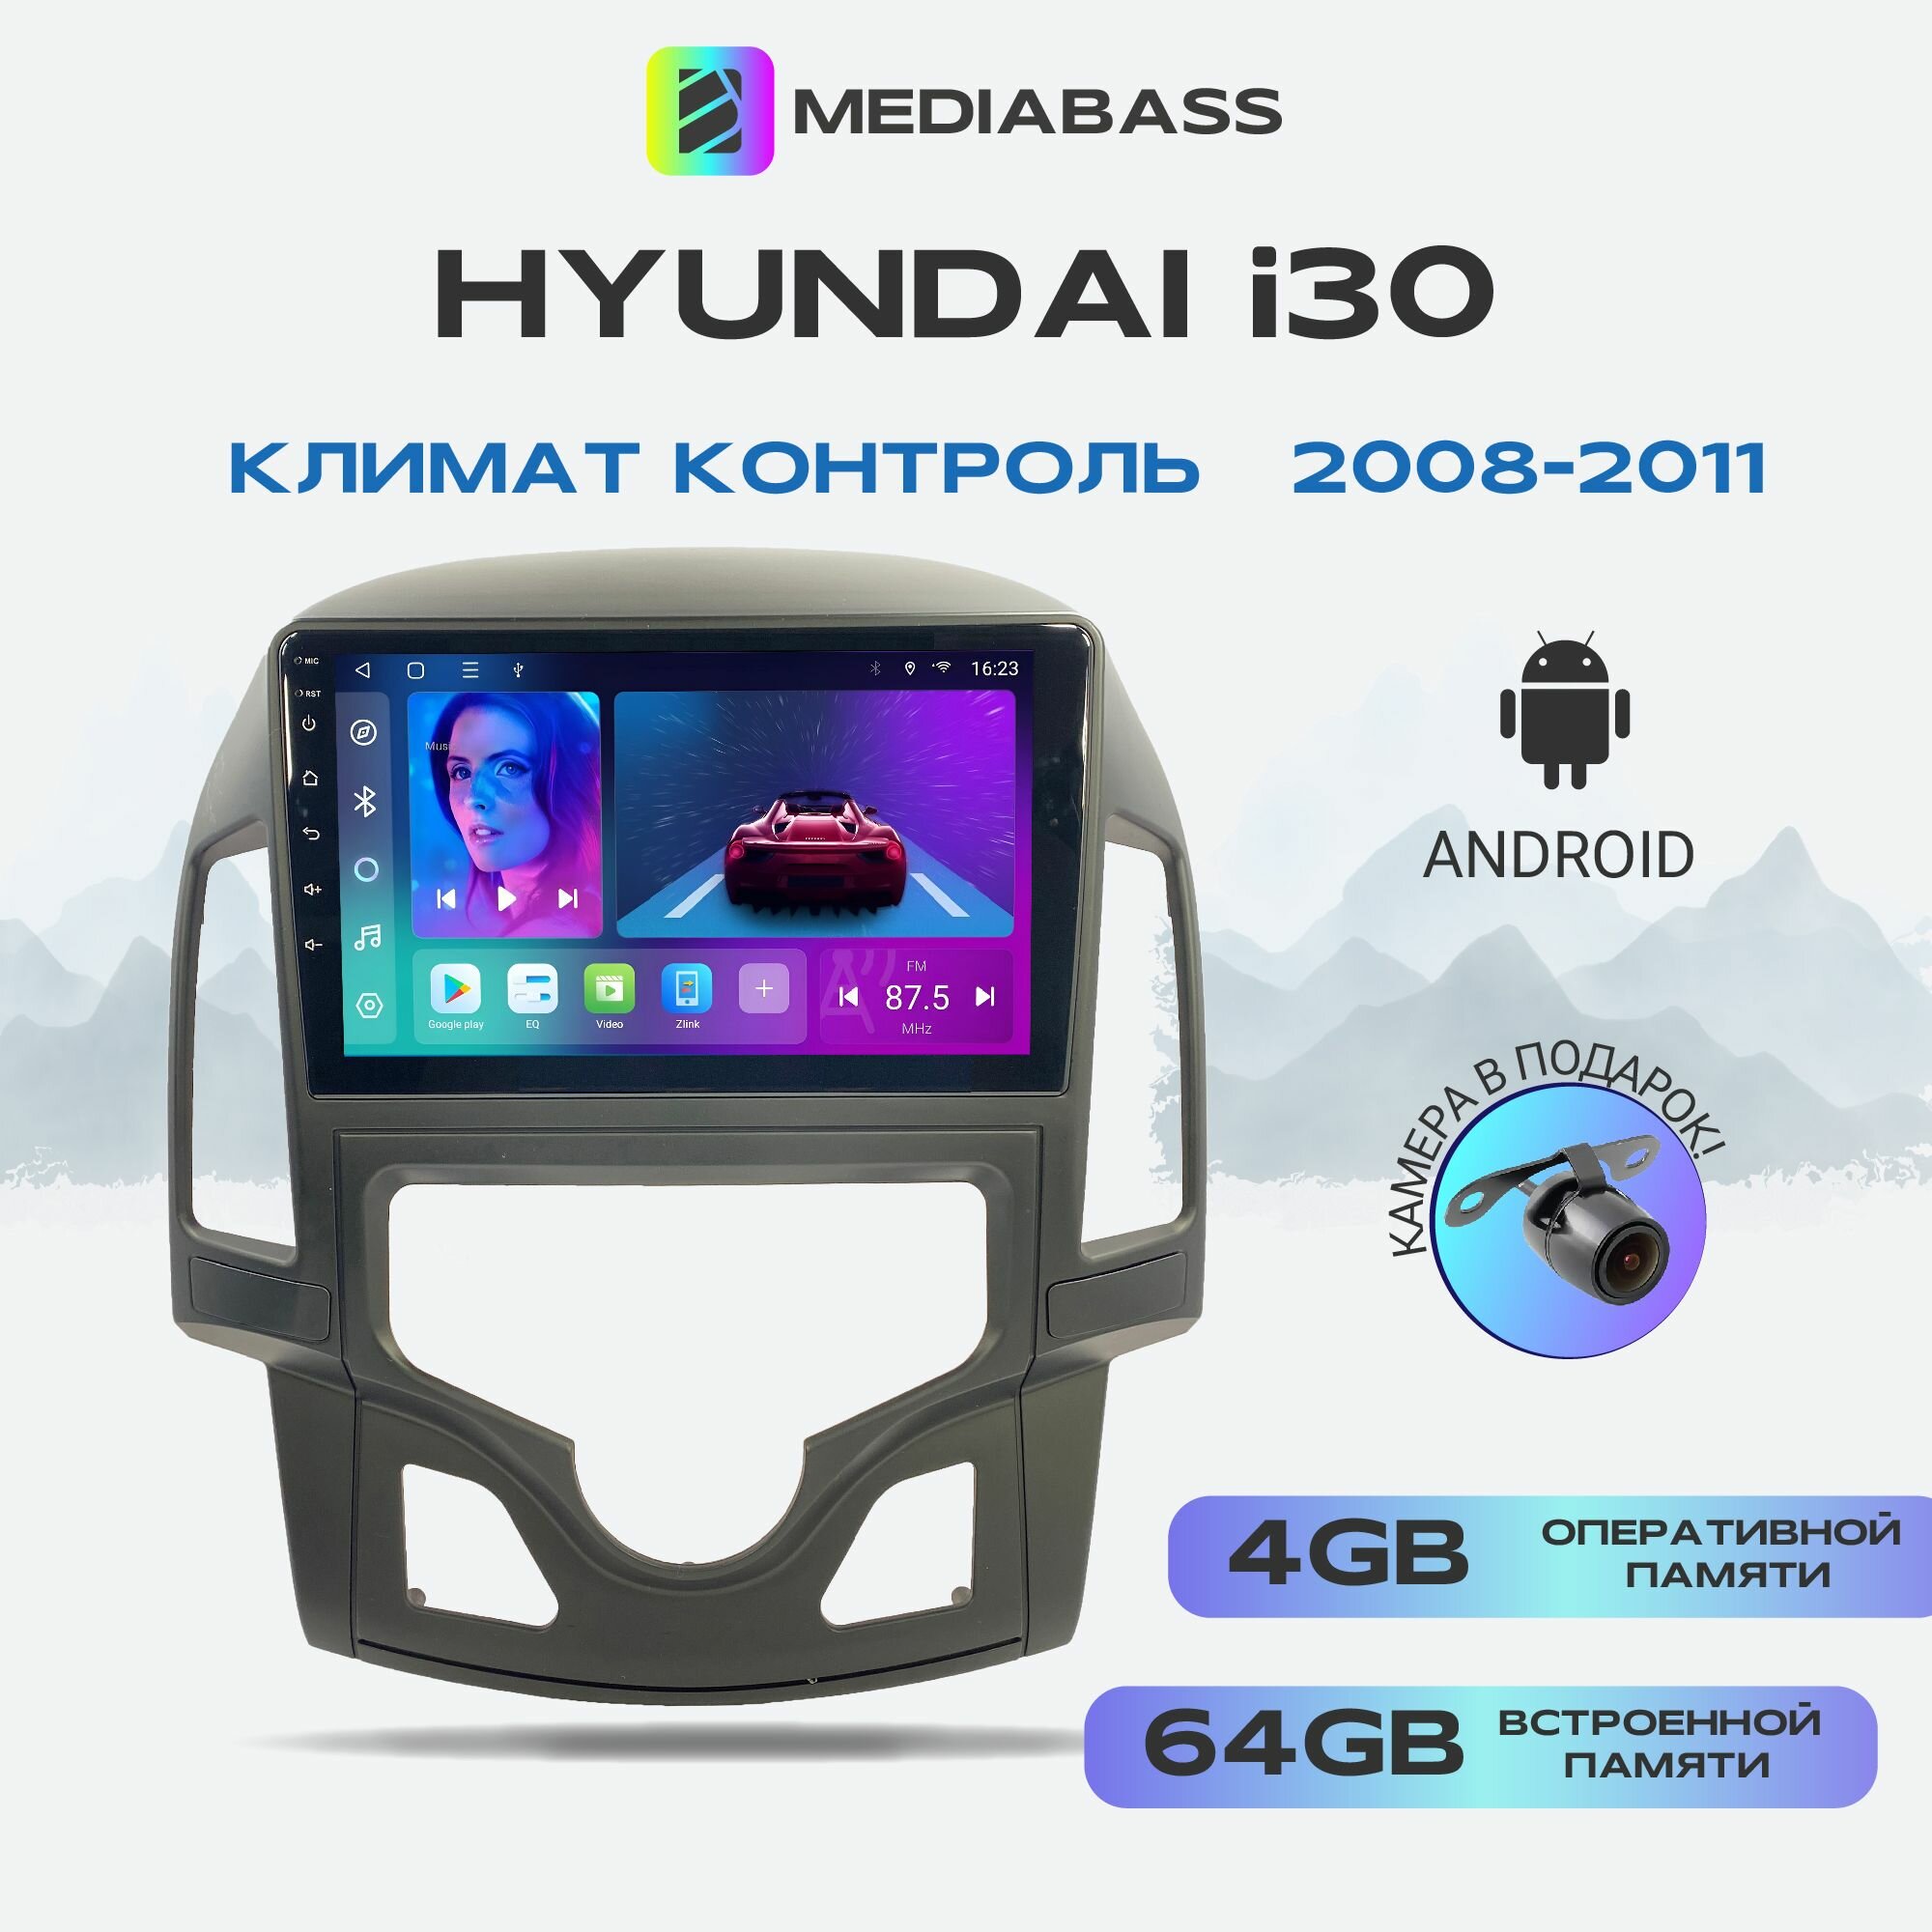 Автомагнитола Mediabass Hyundai i30 2008-2011 Климат контроль, Android 12, 4/64GB, 8-ядерный процессор, DSP, 4G модем, чип-усилитель TDA7851 / Хендай i30